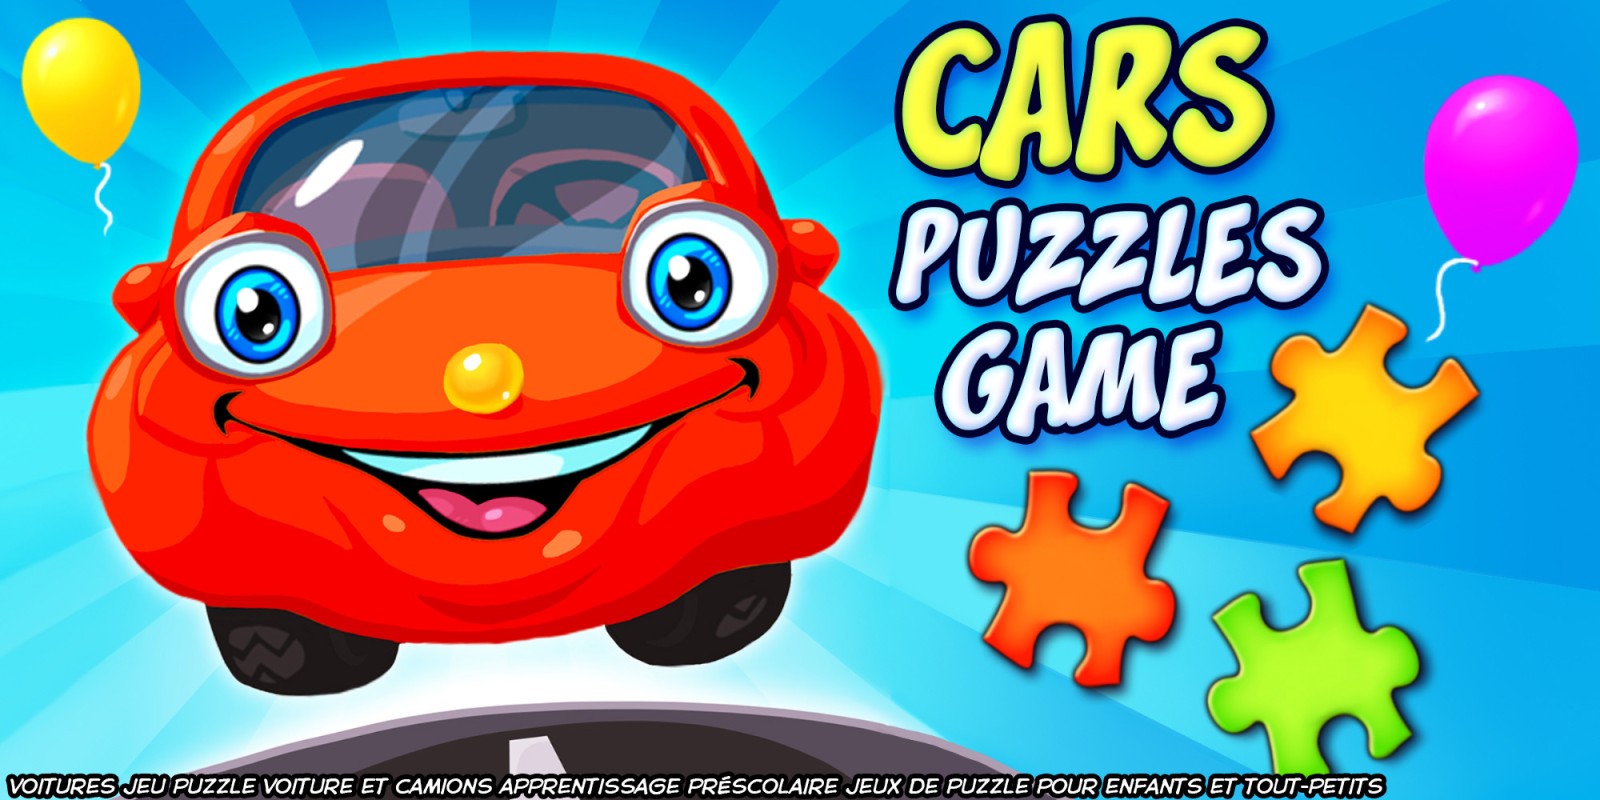 Cars Puzzles Game - voitures jeu puzzle voiture et camions apprentissage préscolaire jeux de puzzle pour enfants et tout-petits